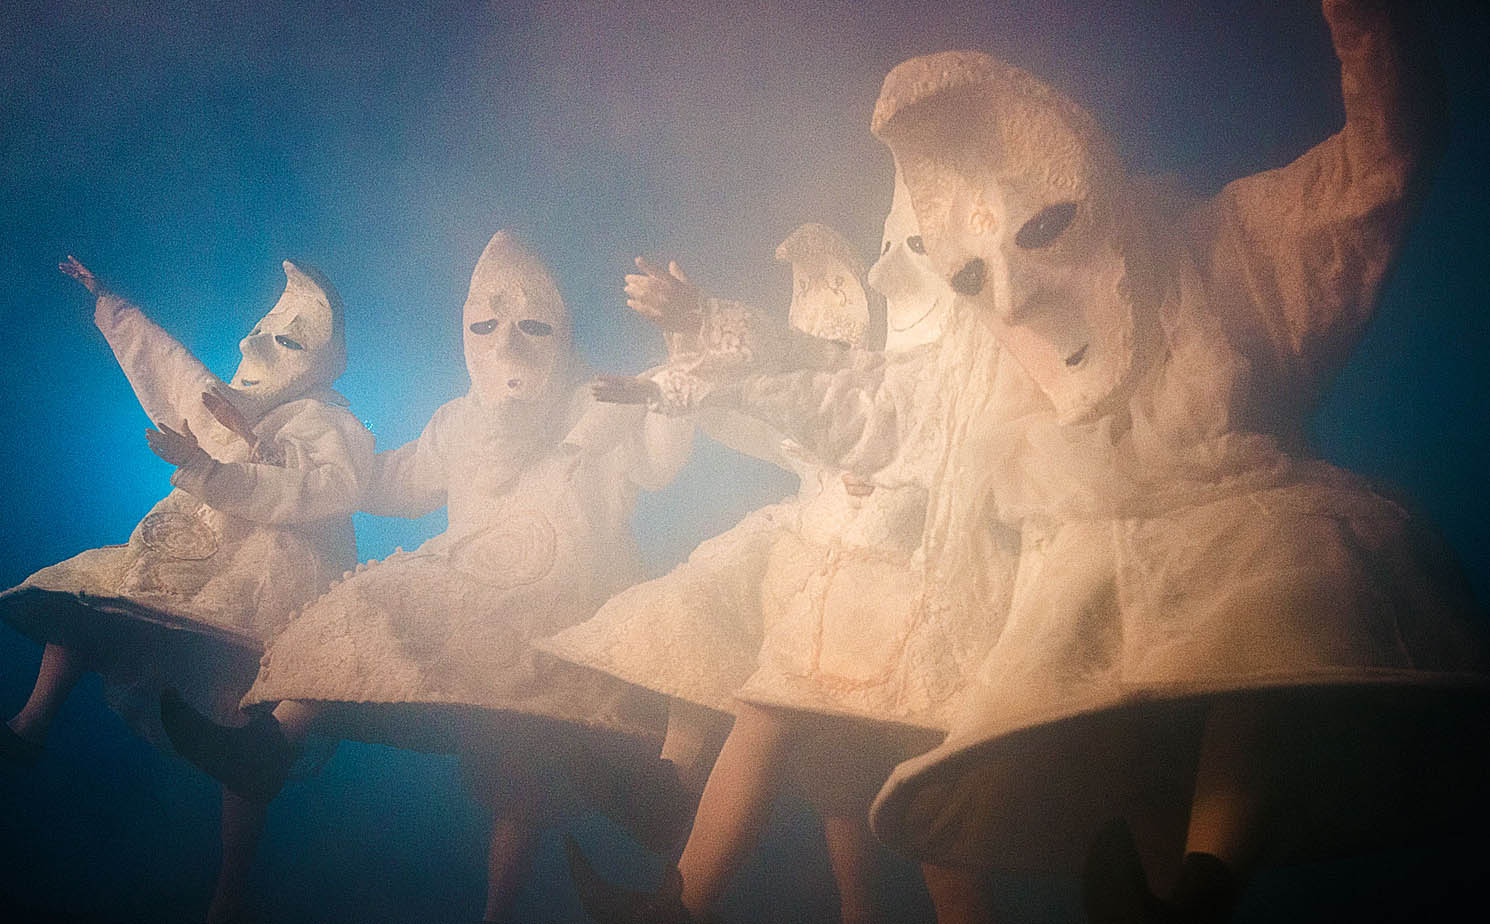 Промофото спектакля "Месяцы" уличного театра "Странствующие куклы господина Пэжо" © moonsters.pejo.ru